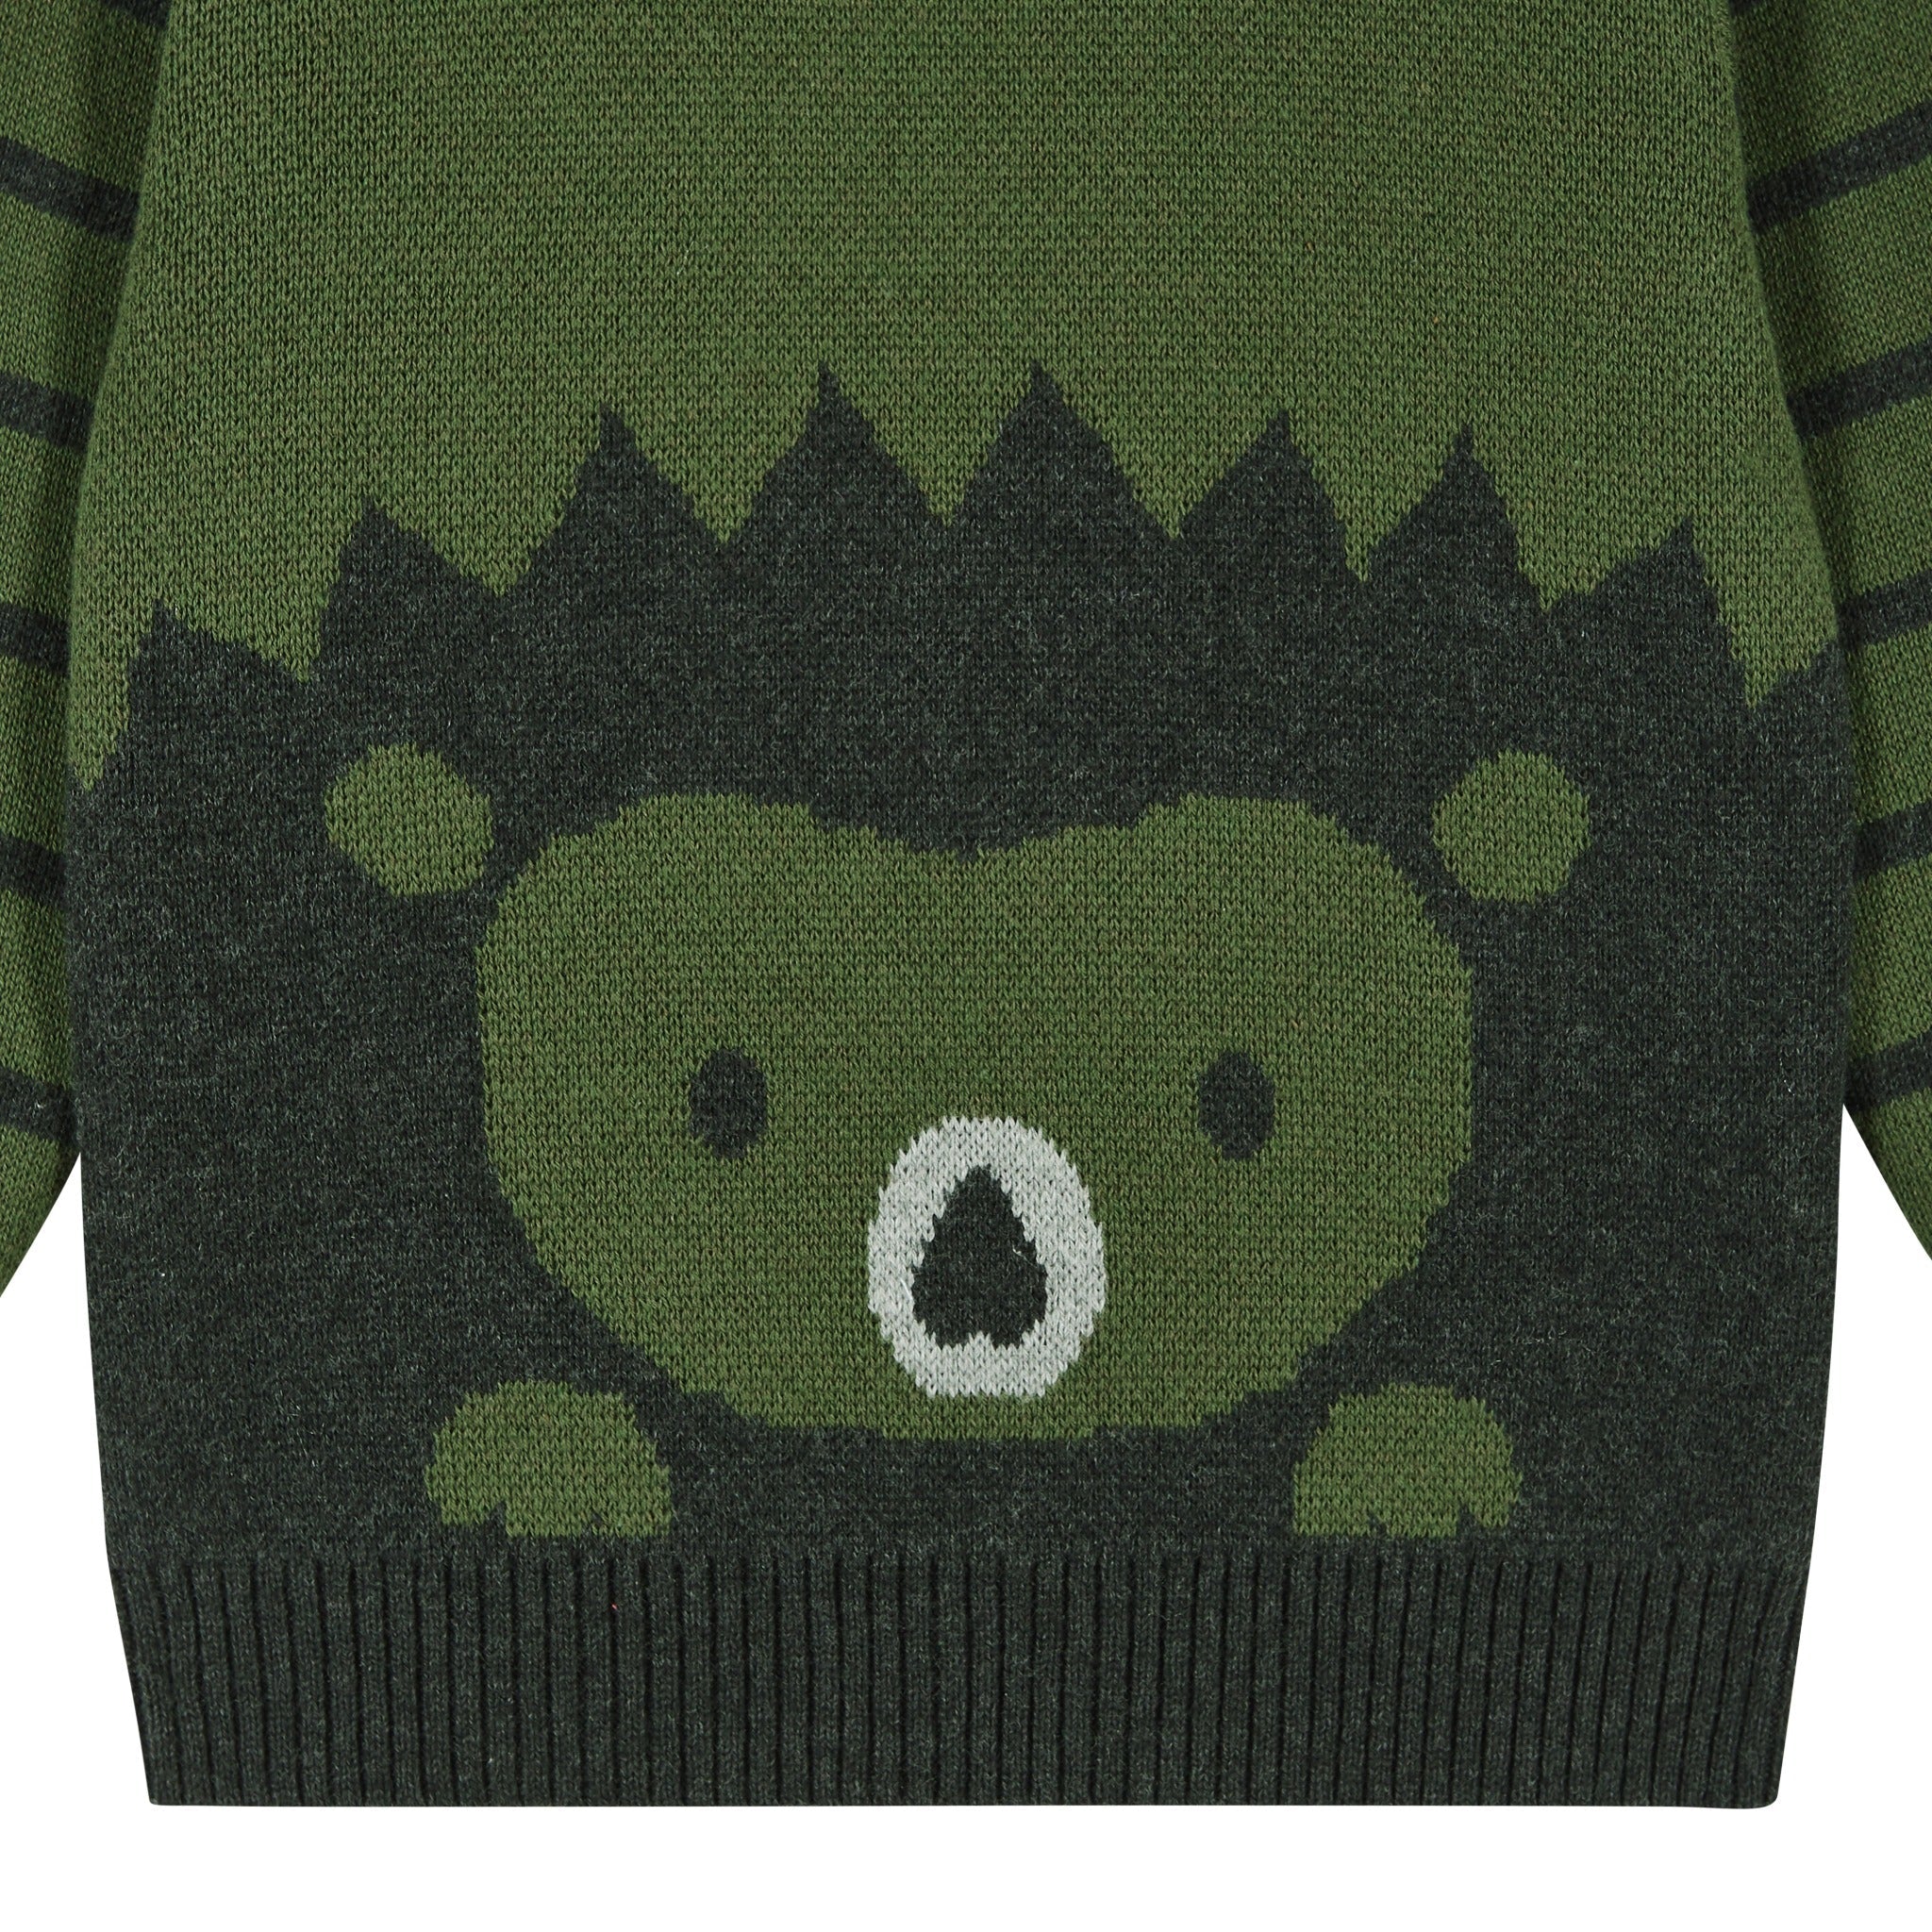 Olive Porcupine Stripe Sweater 2pc Set